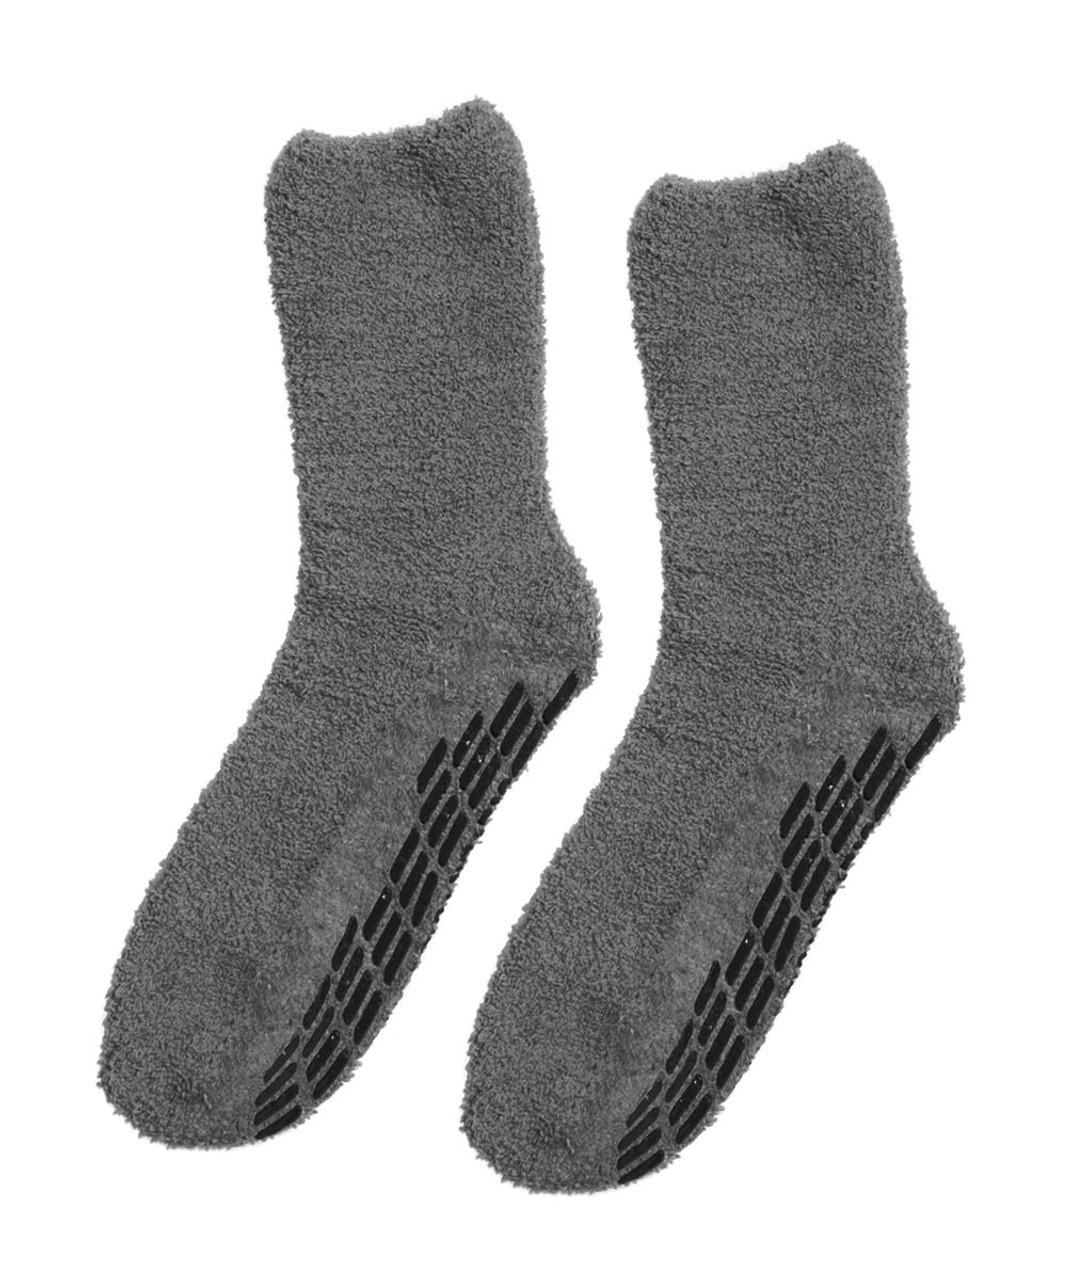 Silverts SV19140 Best Gripper Hospital Socks Men & Women - Slipper Socks Gray, Size=OS, SV19140-SV18-OS